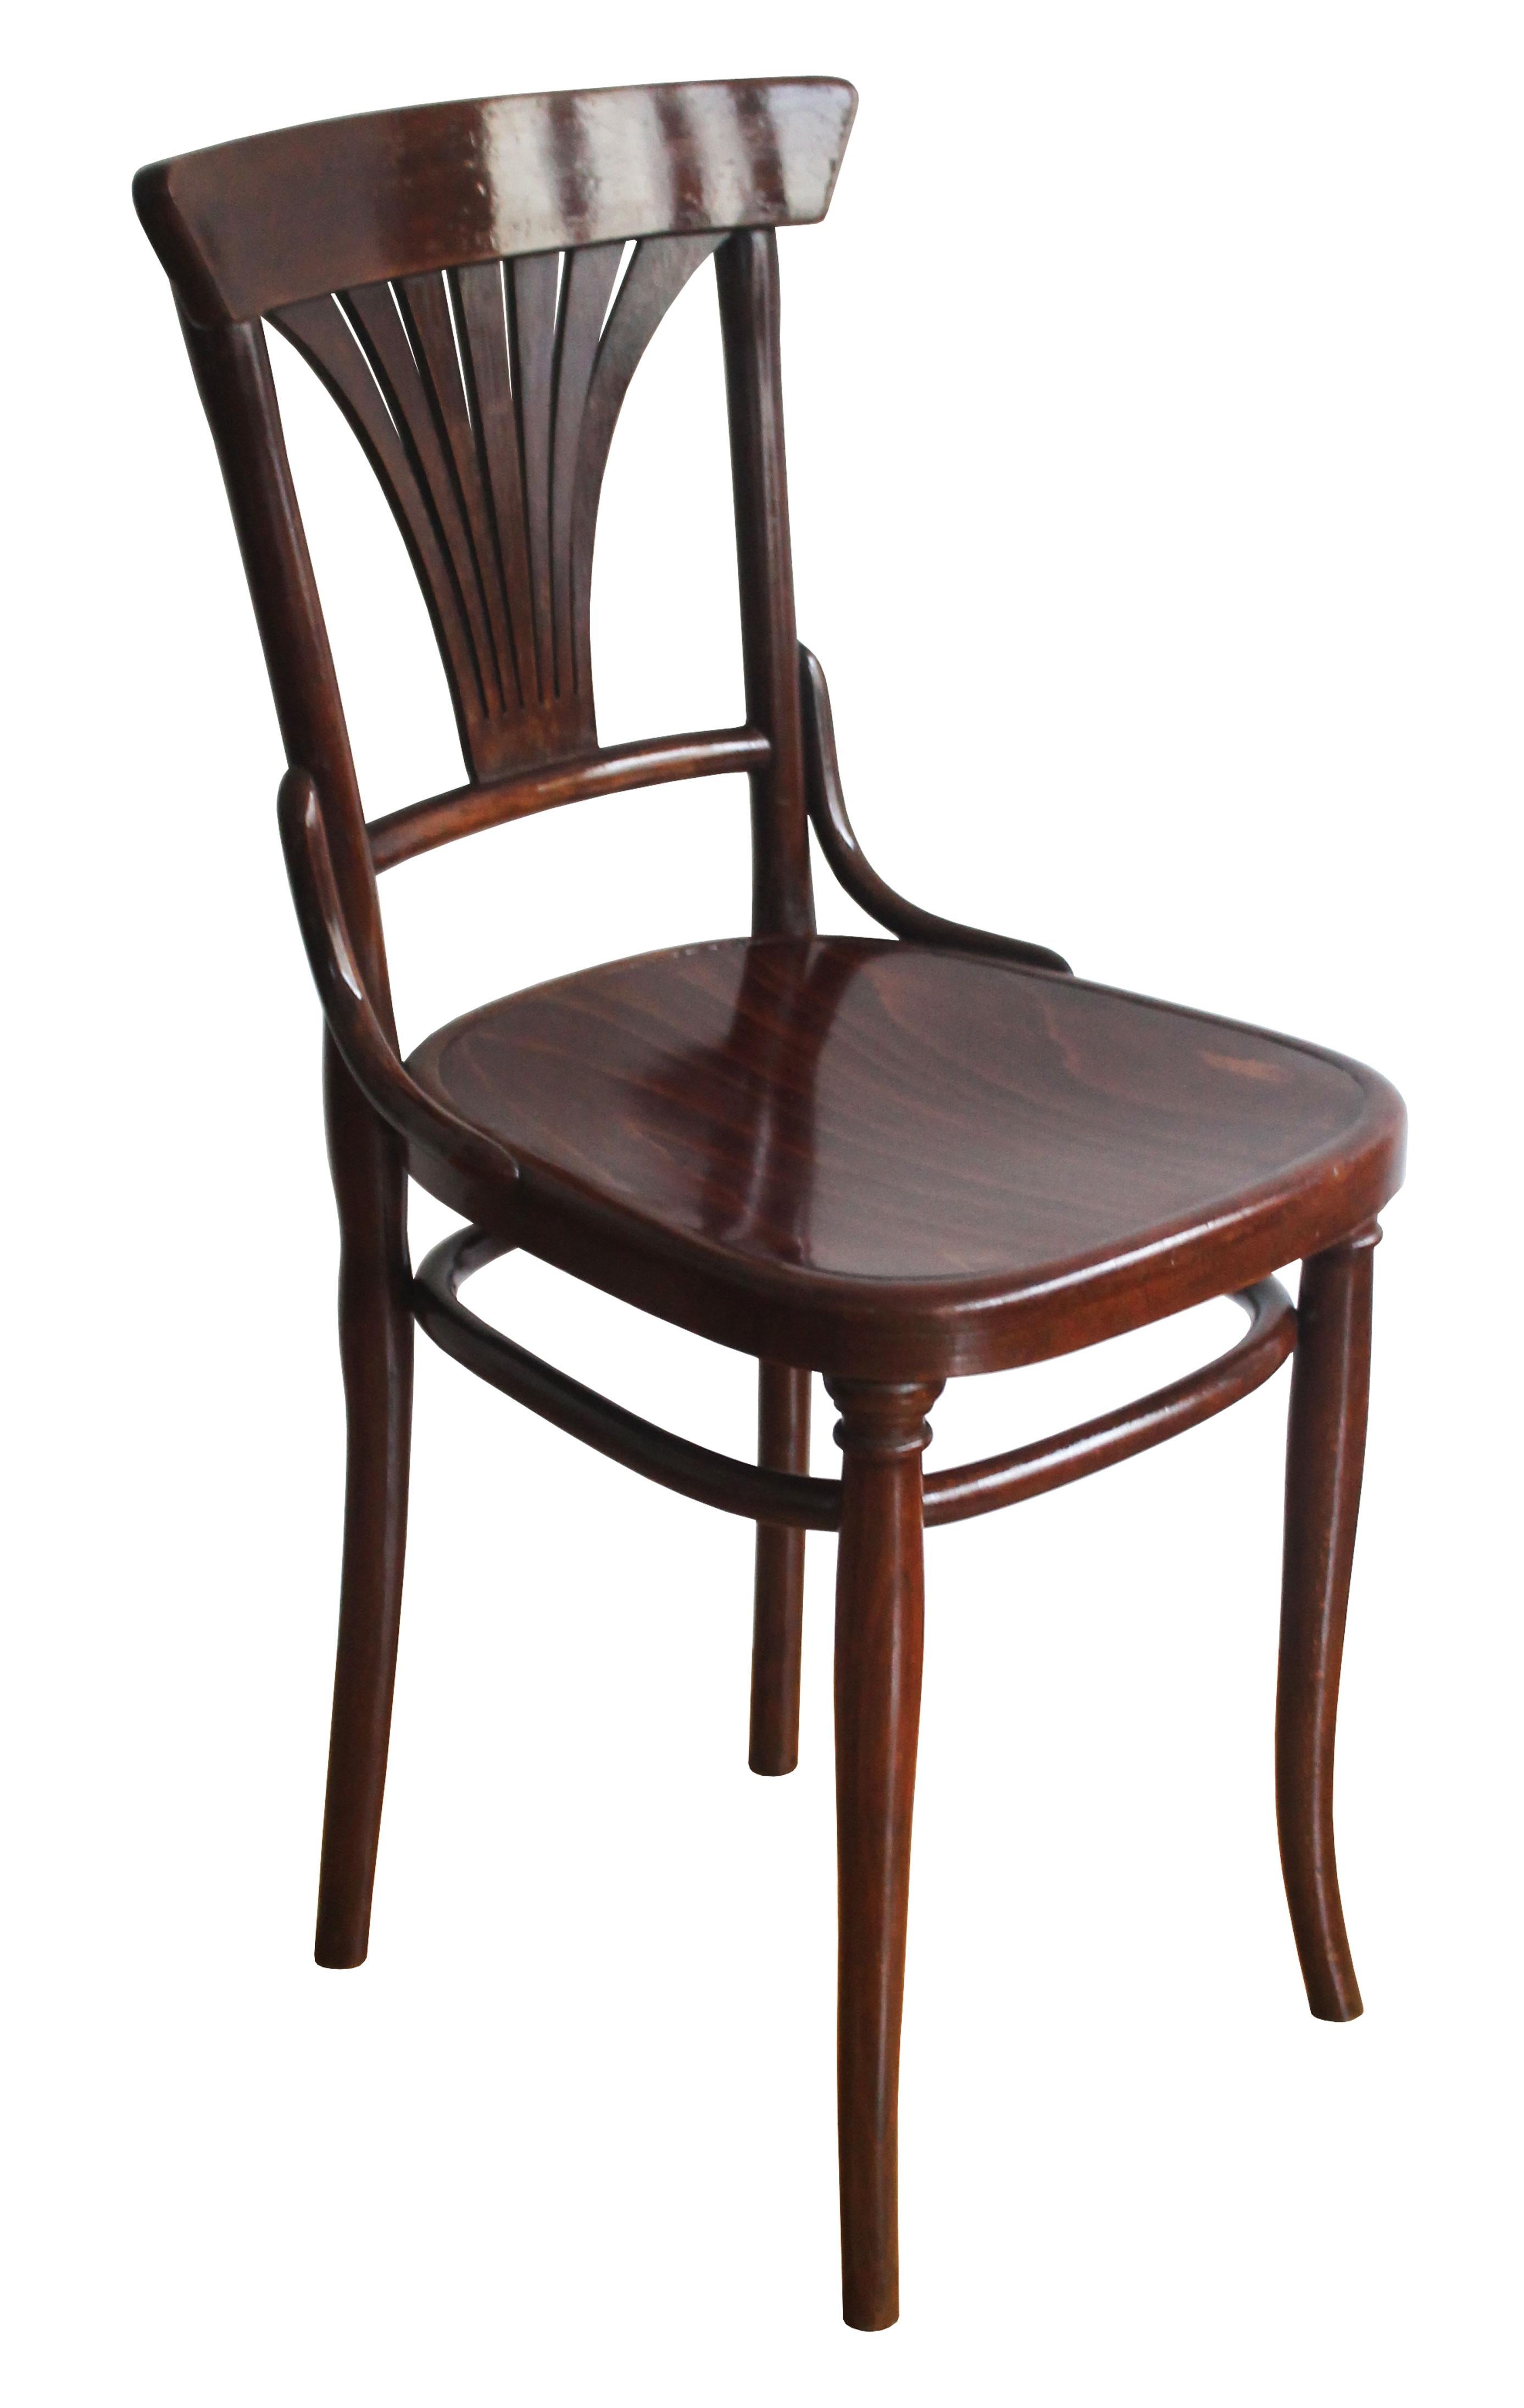 Ces deux chaises de salle à manger ont été conçues à l'origine par la société Gebüder Thonet en 1898, et pouvaient être trouvées dans les catalogues de vente de Thonet sous le numéro de modèle 221. On pense que ces pièces particulières ont été